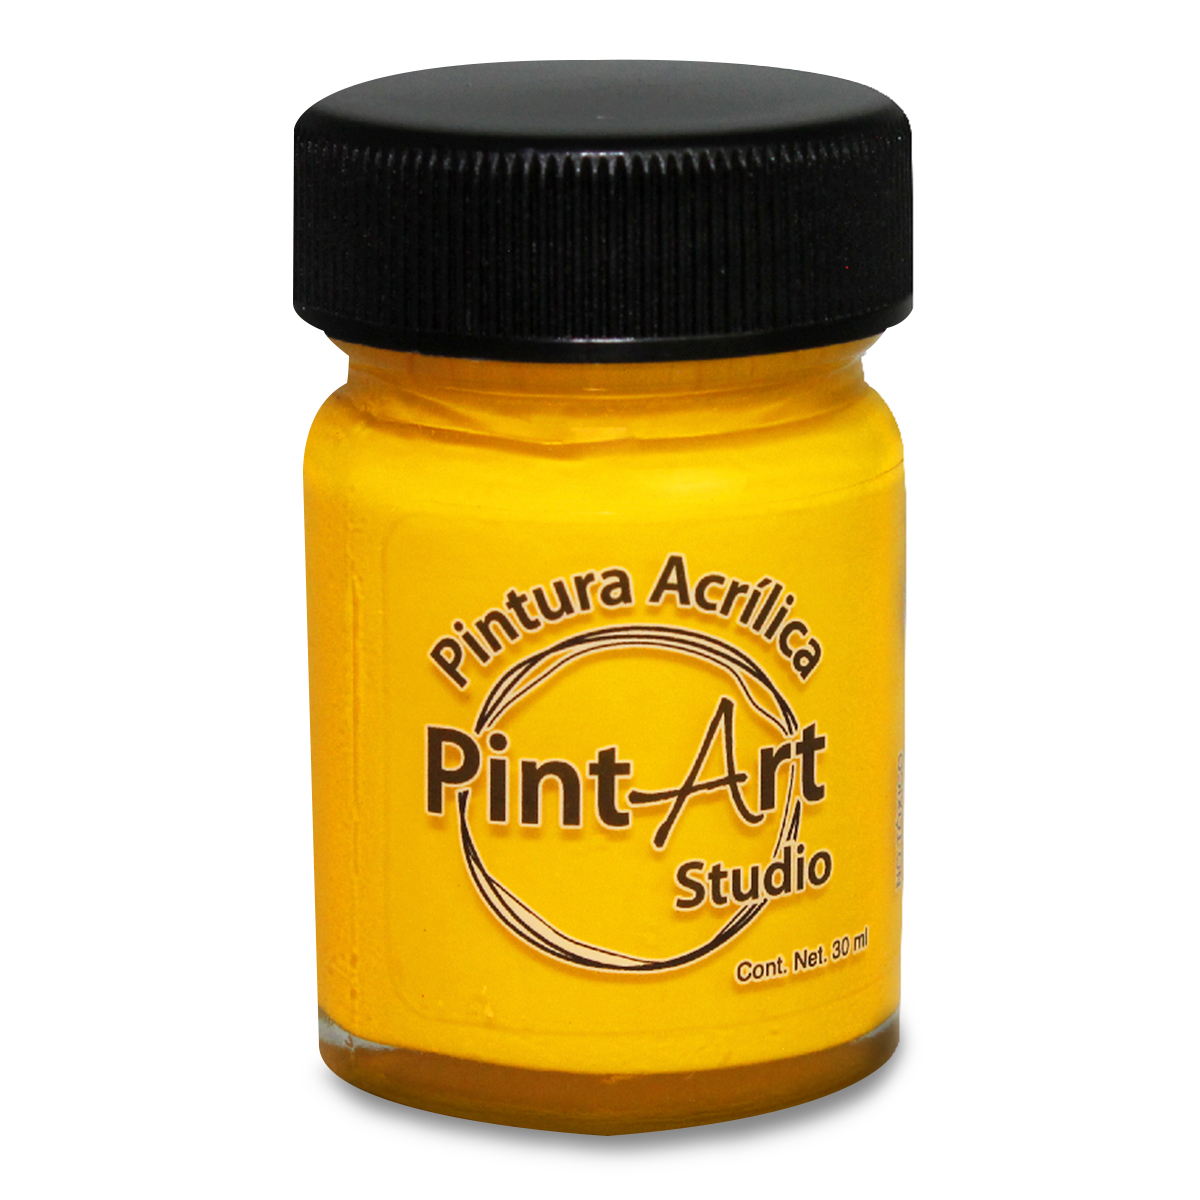 Pintura Acrílica PintArt Studio No.203 / Amarillo oscuro / 1 pieza / 30 ml